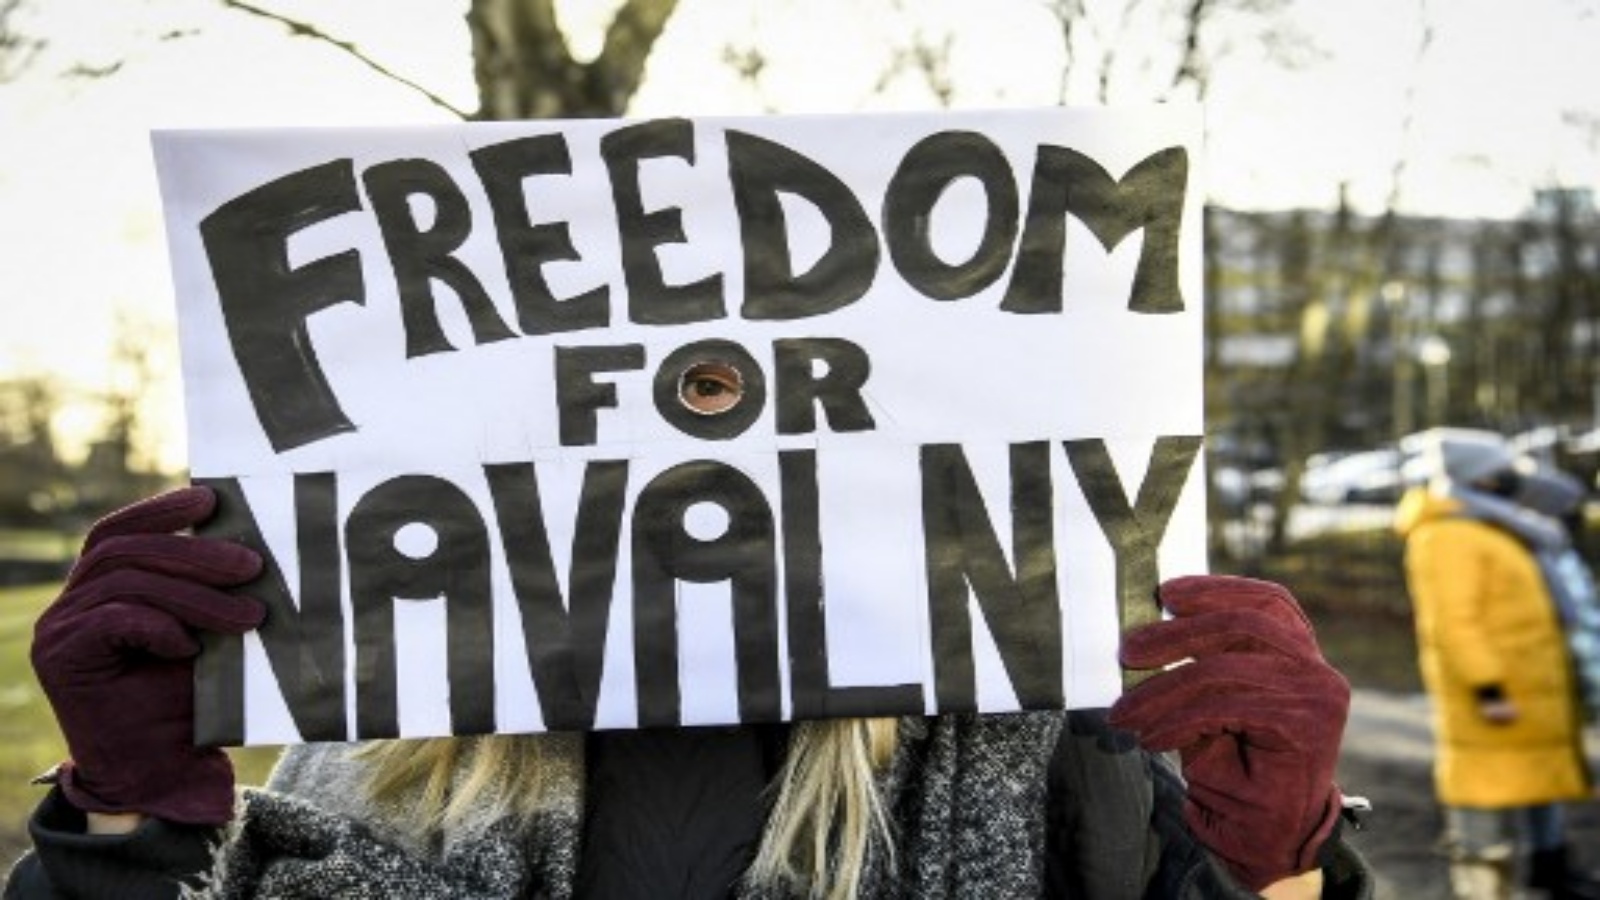 متظاهر يطالب بالإفراج عن زعيم المعارضة الروسي المحتجز أليكسي نافالني يحمل لافتة أمام السفارة الروسية في ستوكهولم ، السويد ، في 23 يناير 2021.